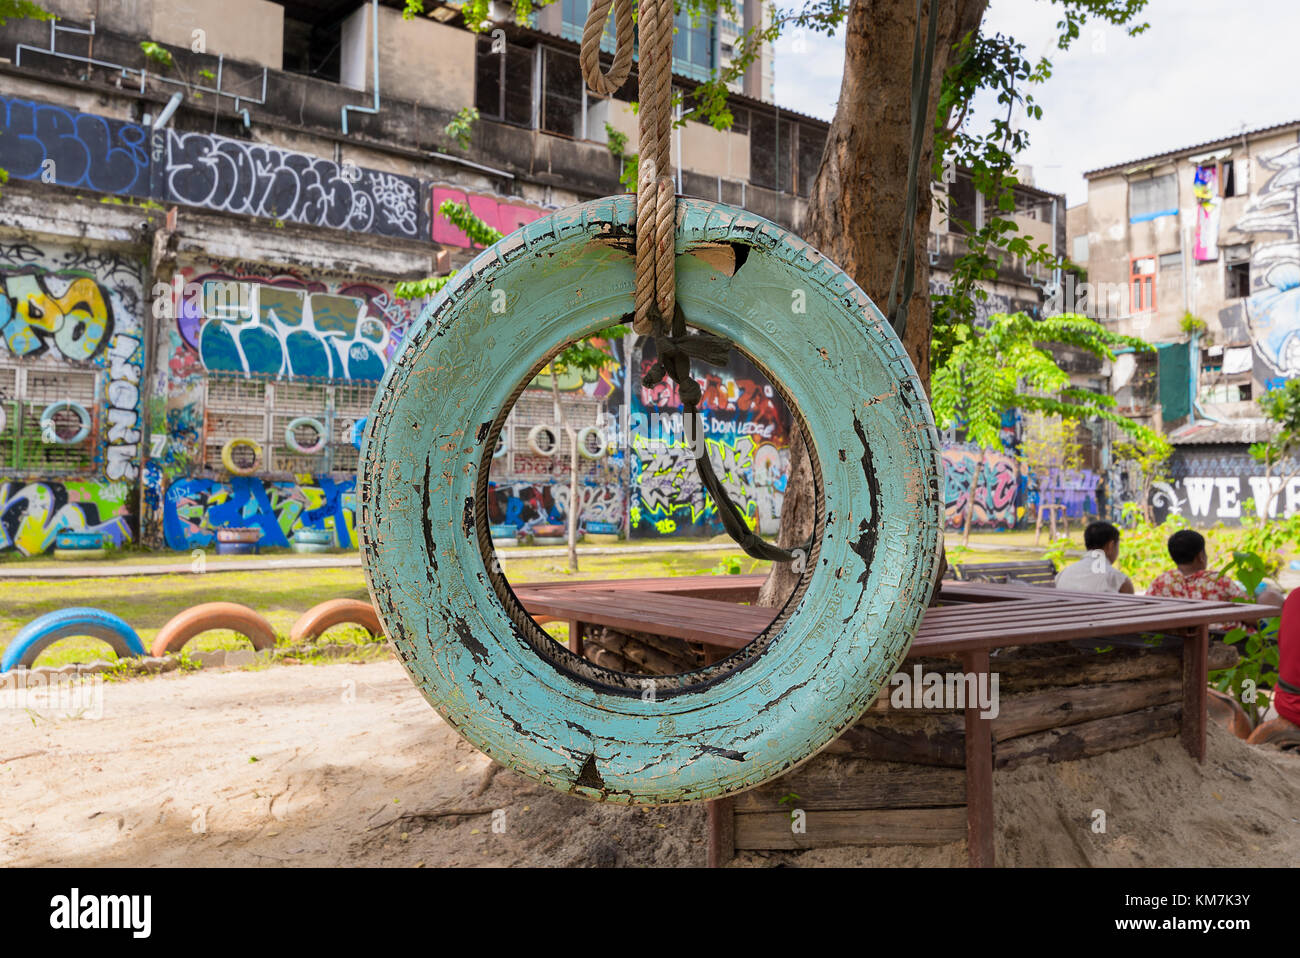 Un vecchio stile tire swing in una città parco giochi per bambini con la vecchia vernice cracking appeso ad un albero da una spessa fune. Foto Stock